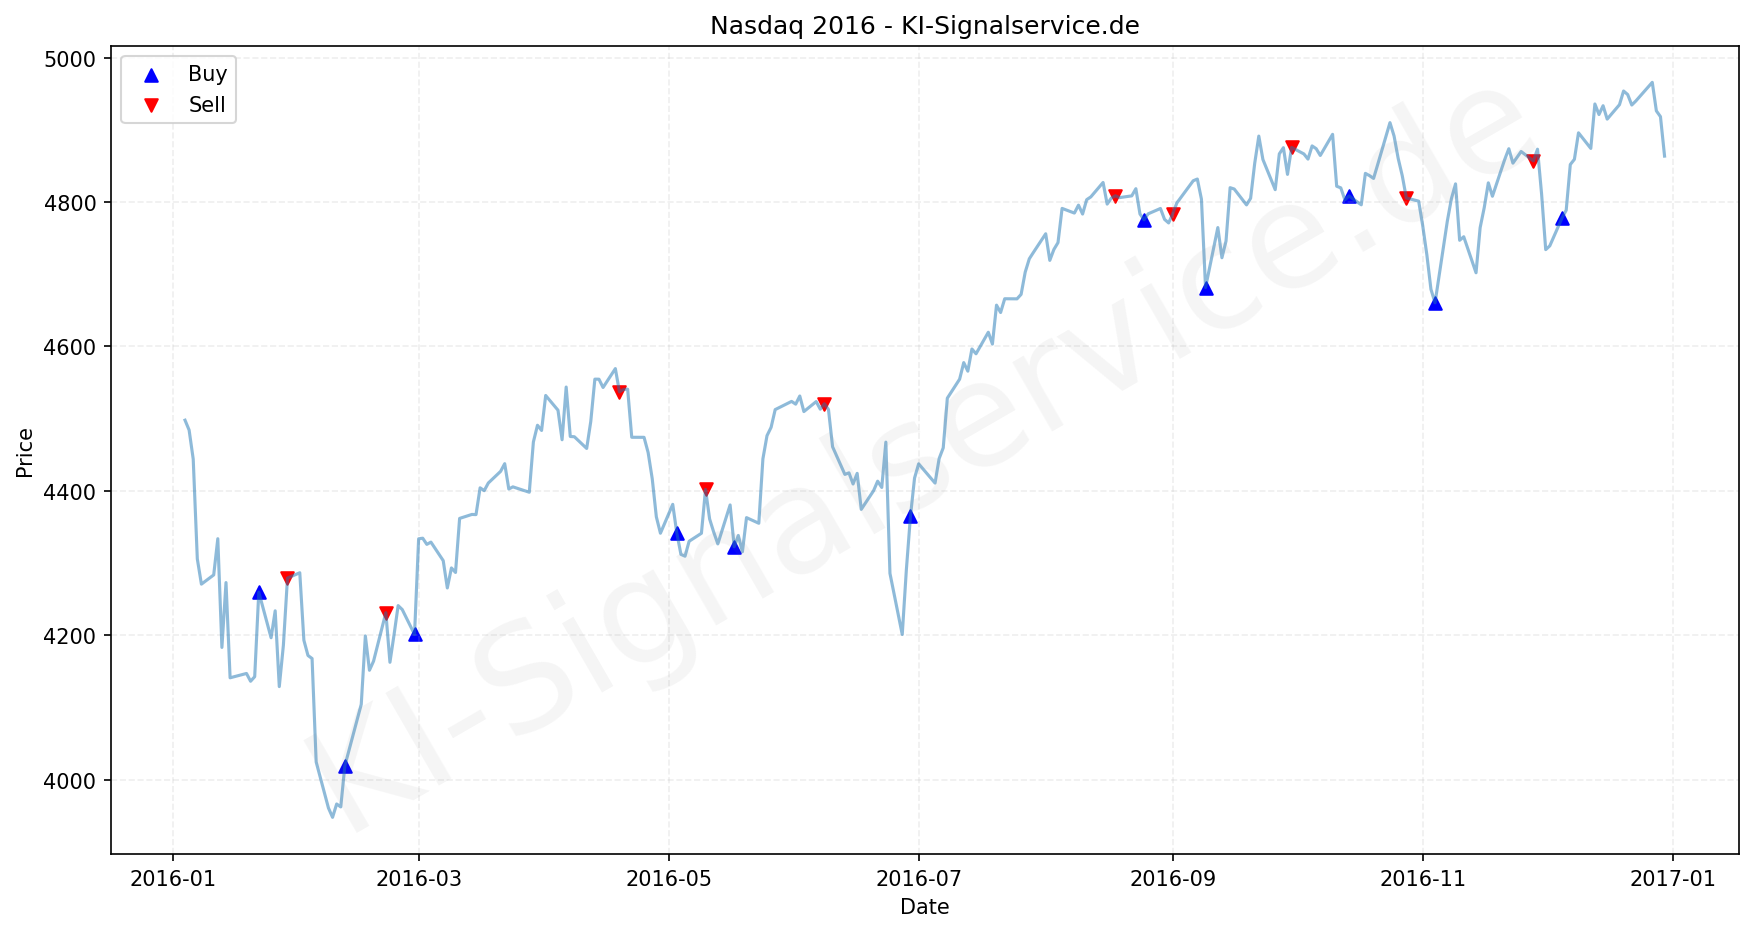 NADAQ Index Performance Chart - KI Tradingsignale 2016